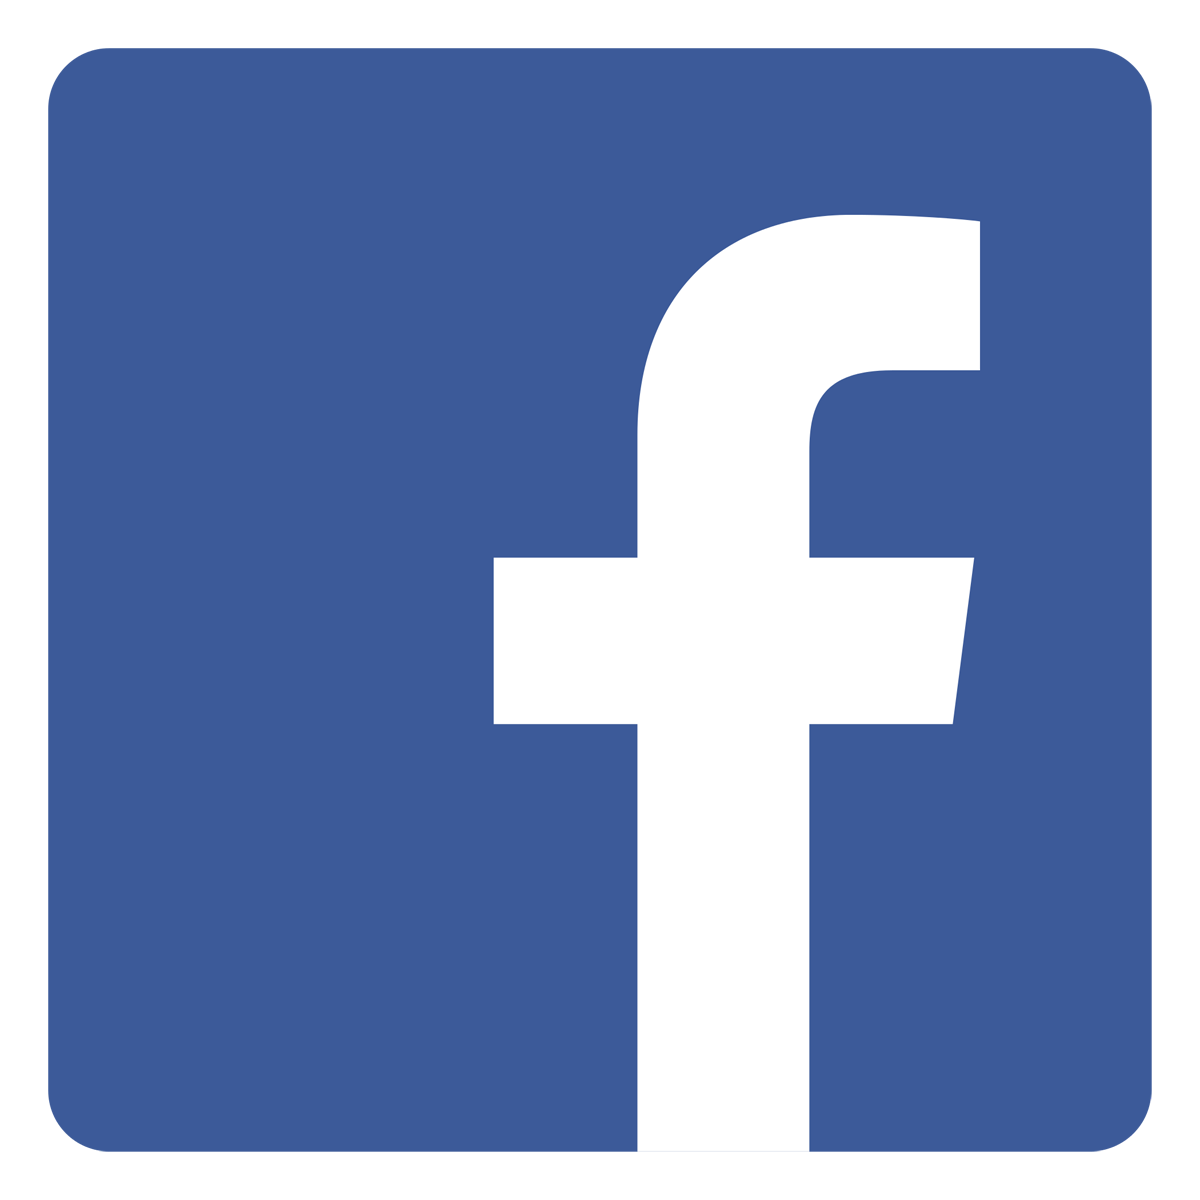 Square Facebook Logo Transparent Image